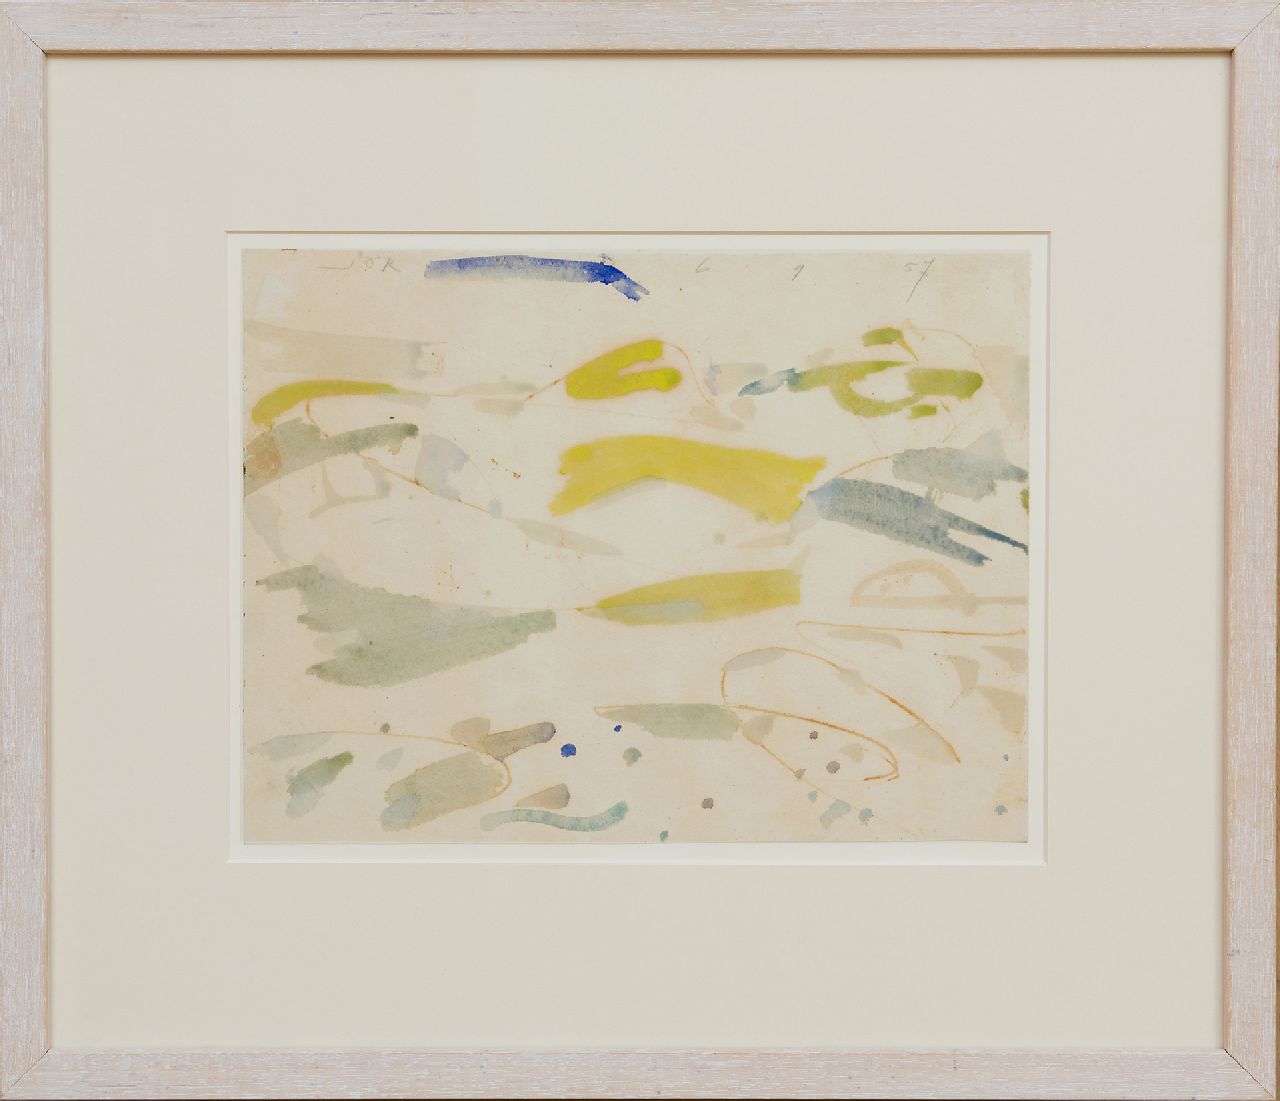 Jordens J.G.  | 'Jan' Gerrit Jordens, Schiermonnikoog, aquarel en ecoline op papier 23,6 x 31,1 cm, gesigneerd linksboven en gedateerd 6 9 57